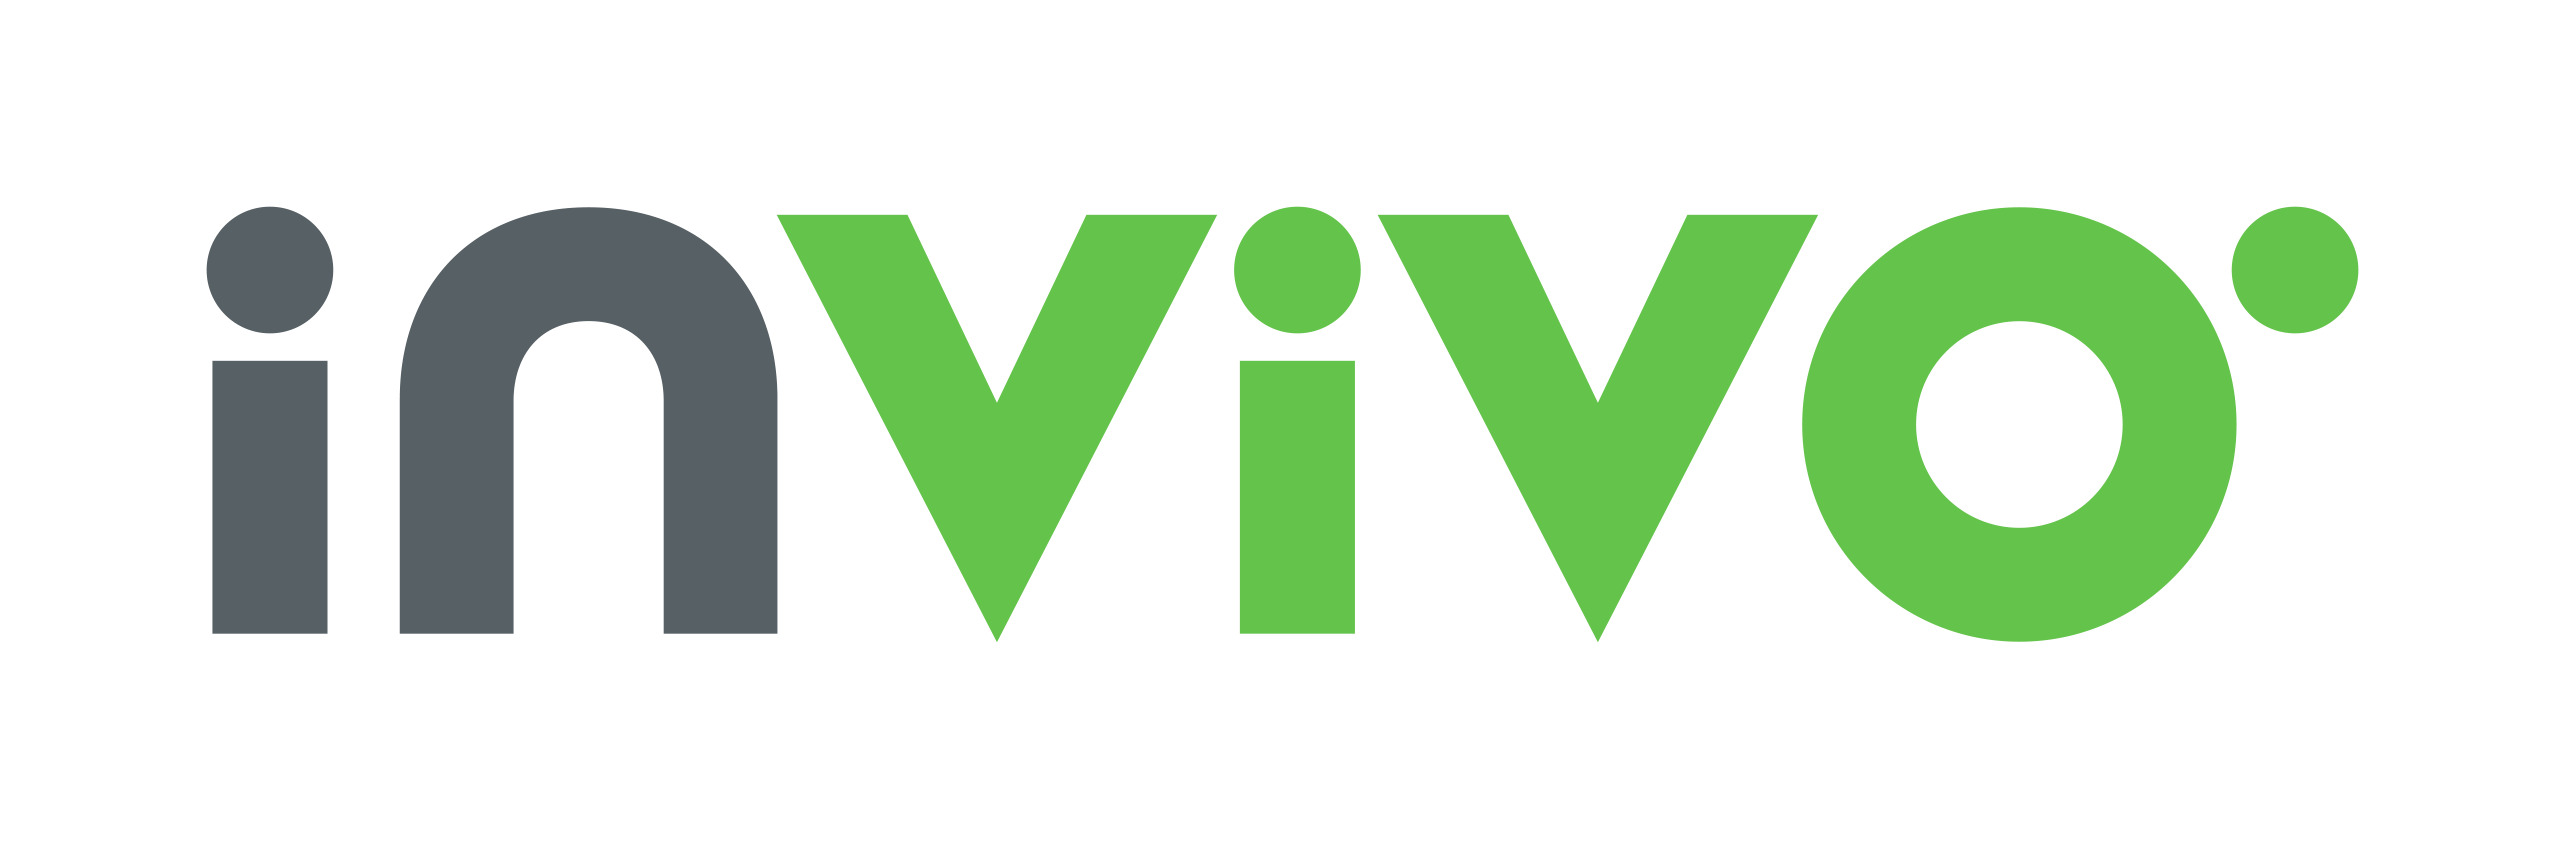 Invivo Group Logo png